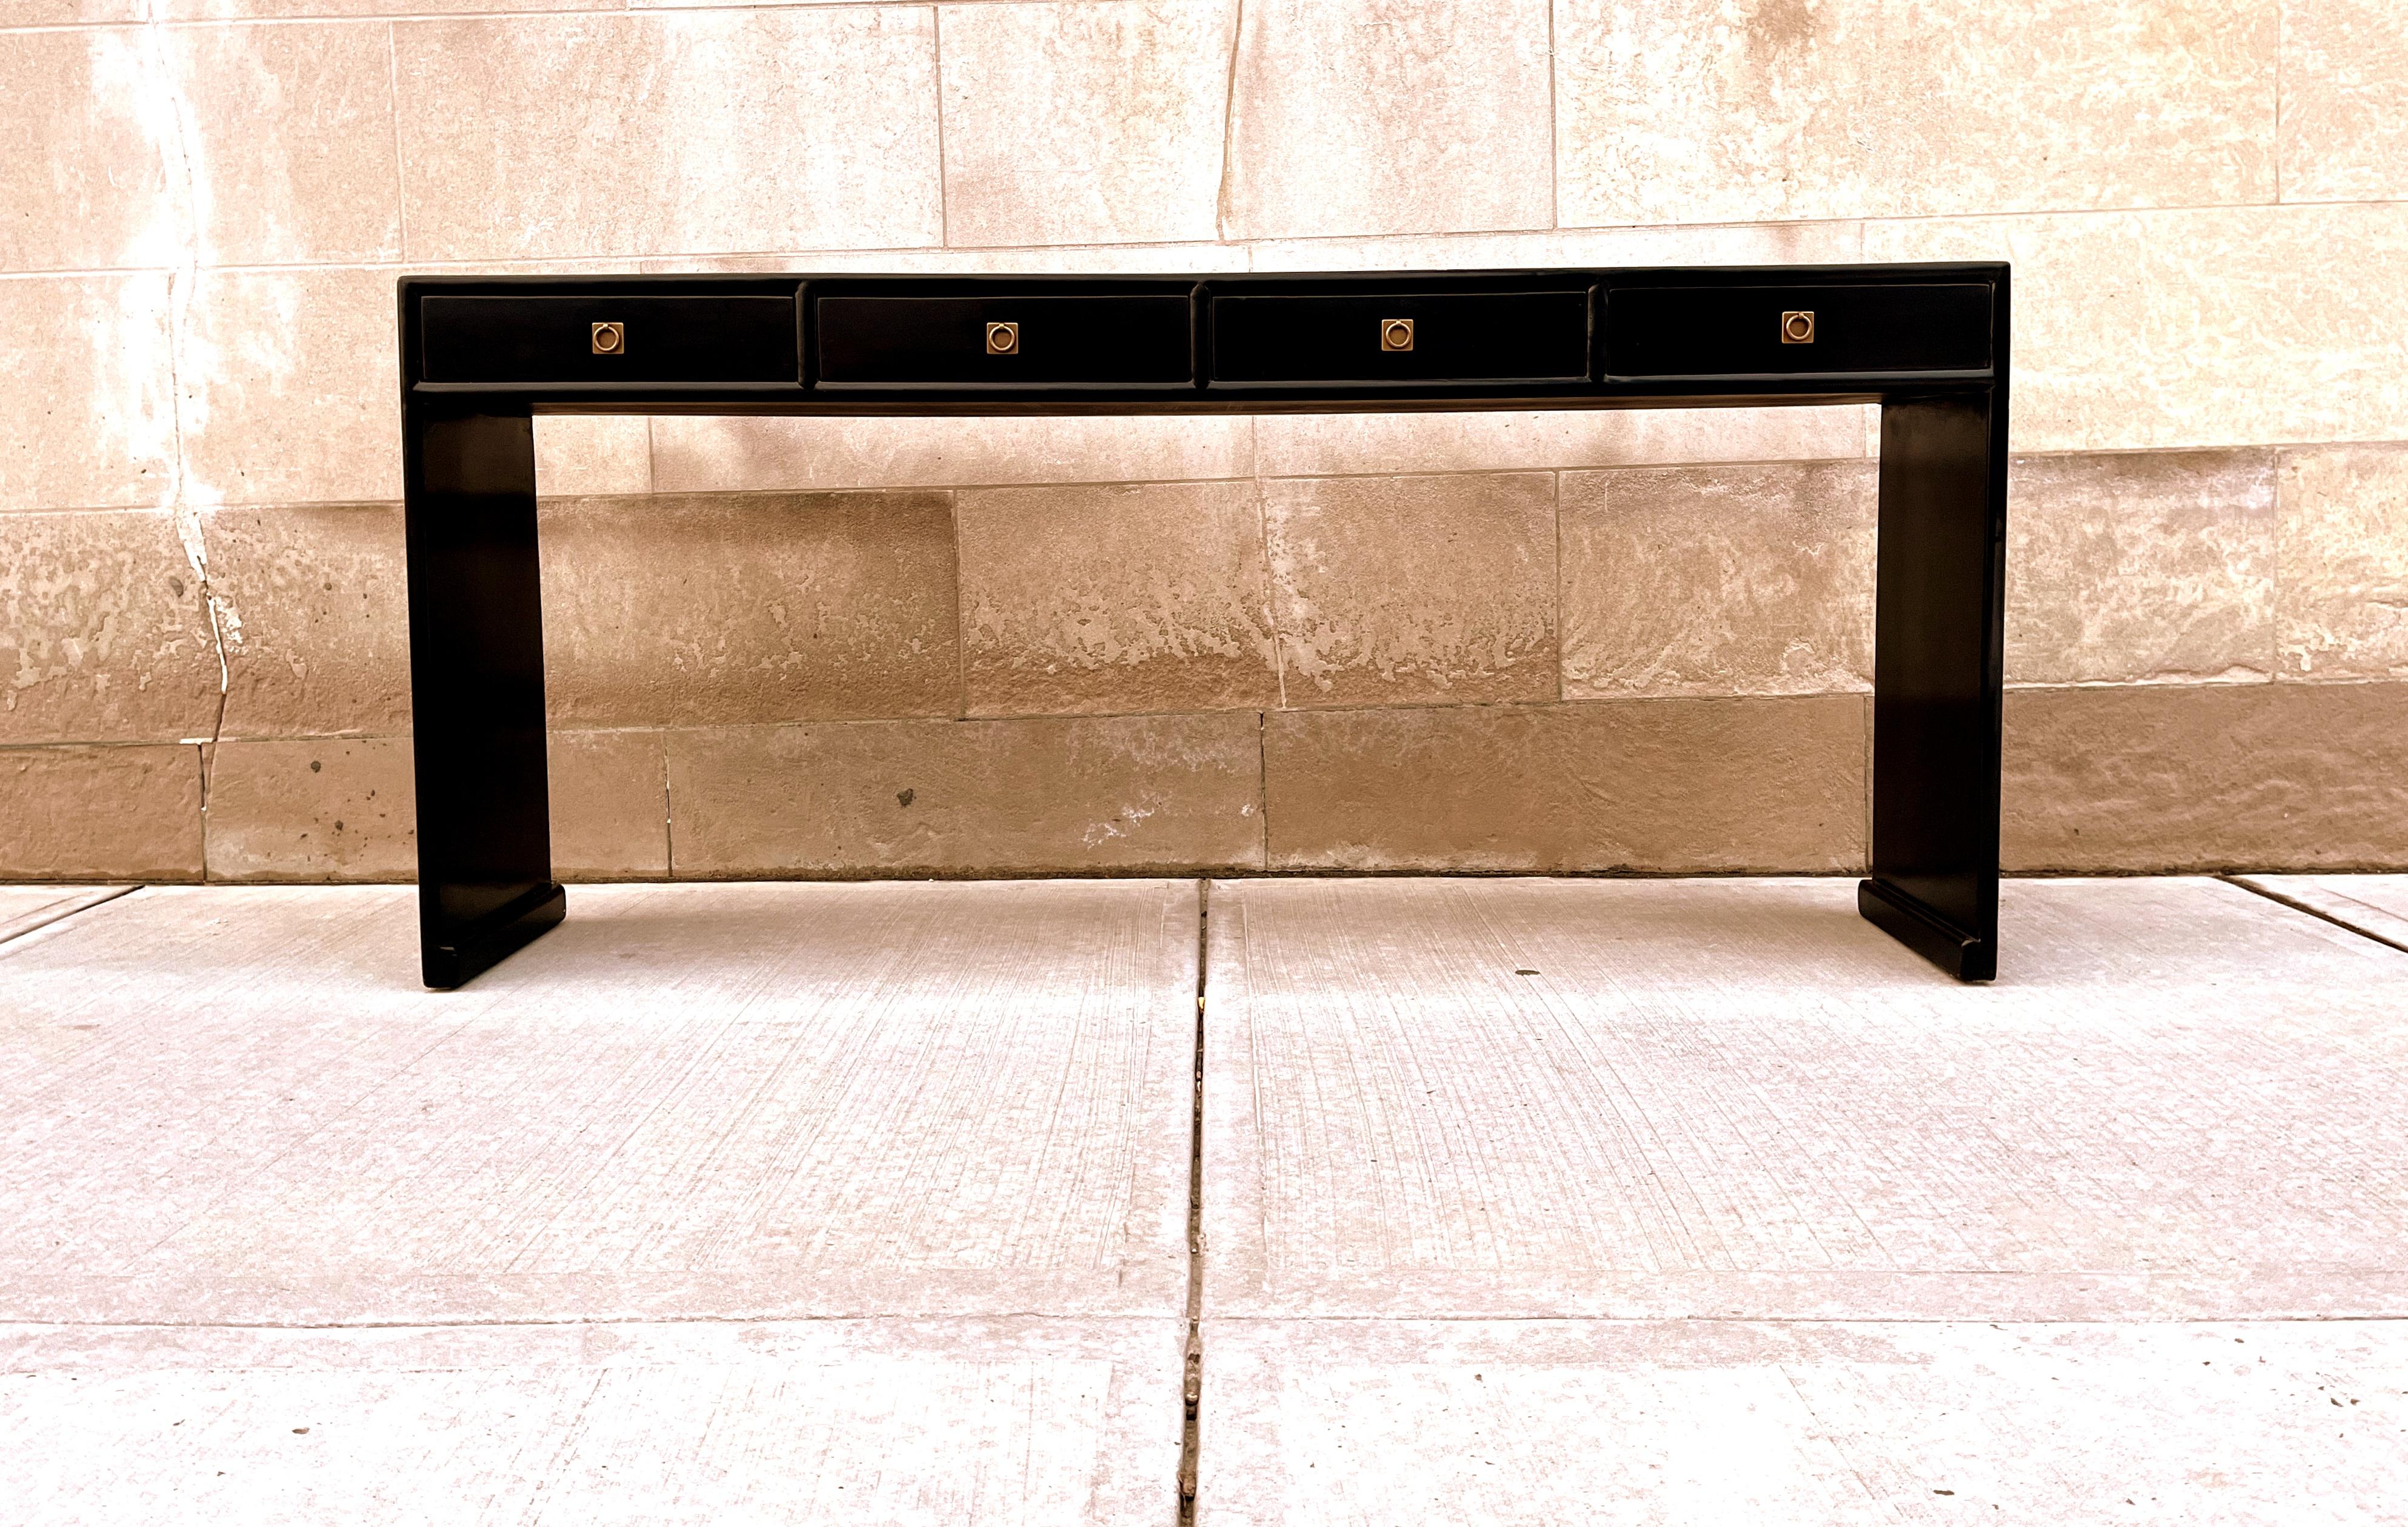 Fine table console en laque noire avec quatre tiroirs, pieds en cascade, ferrure en laiton, forme élégante et simple, belles lignes. Nous proposons des meubles de qualité aux finitions élégantes, qui ont été publiés à plusieurs reprises dans les